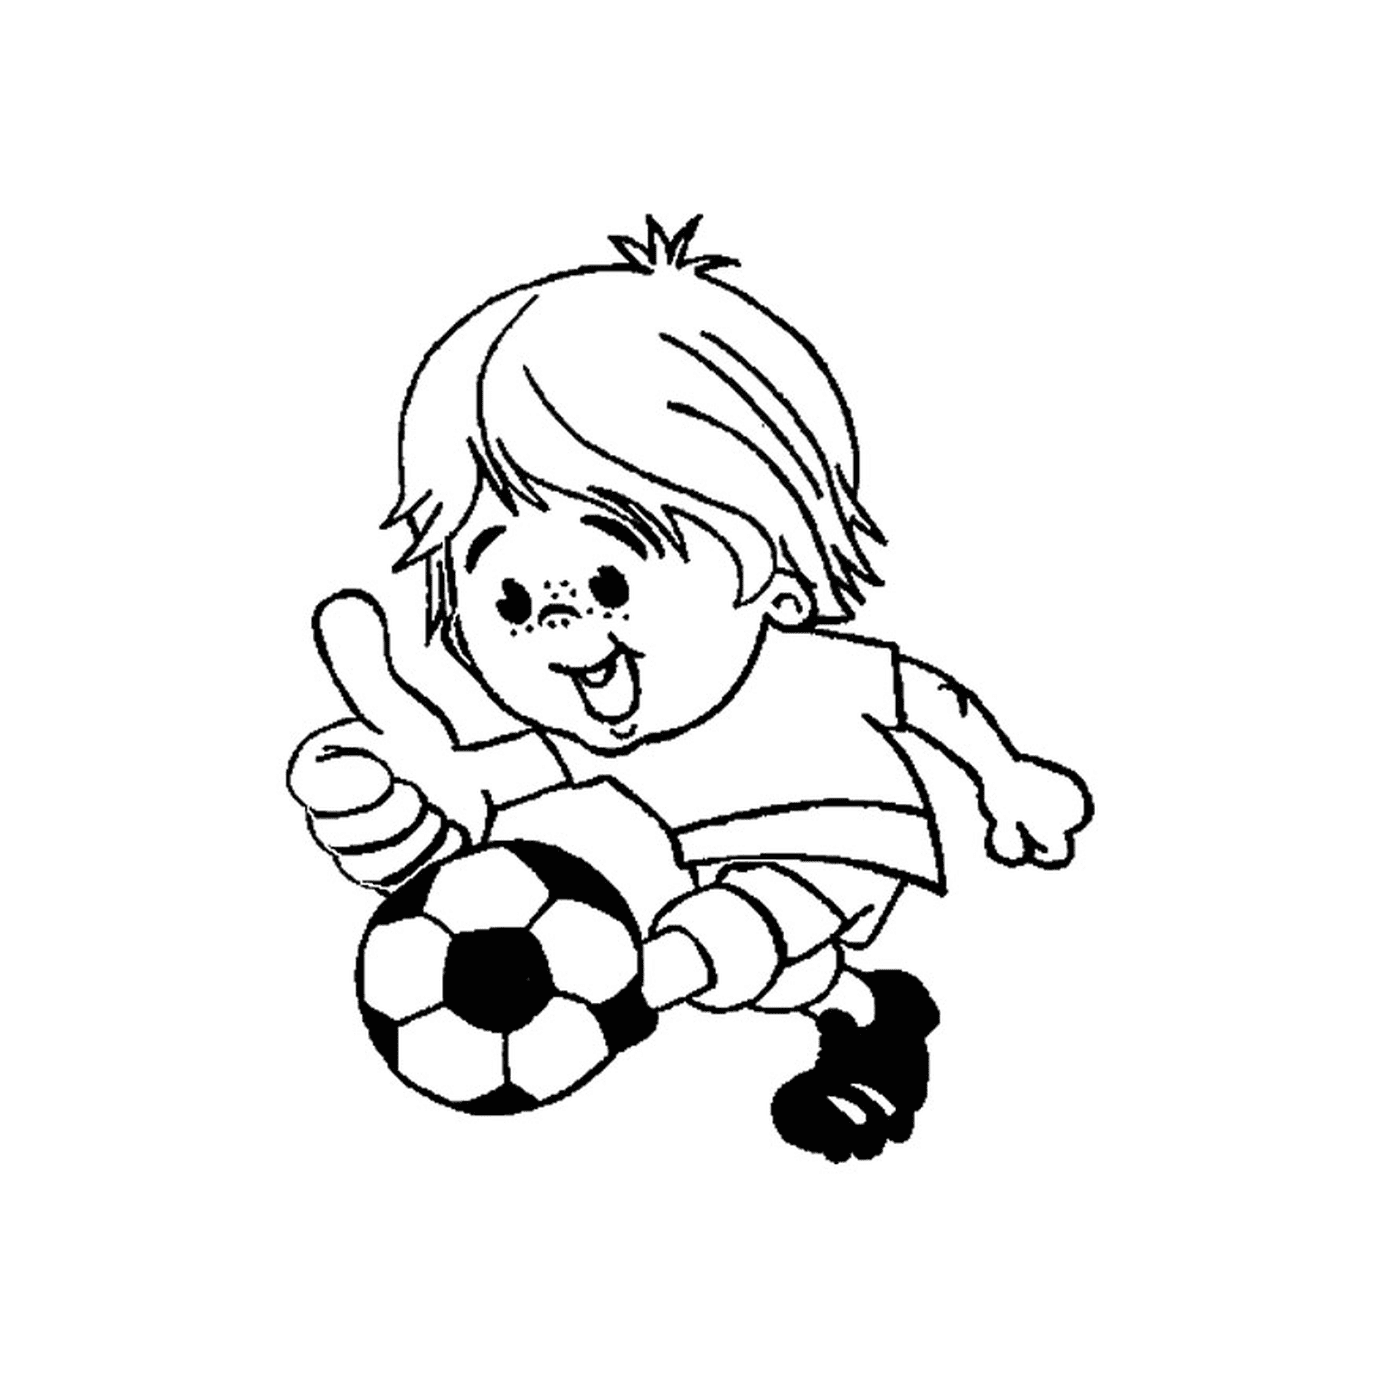  一个男孩踢足球 